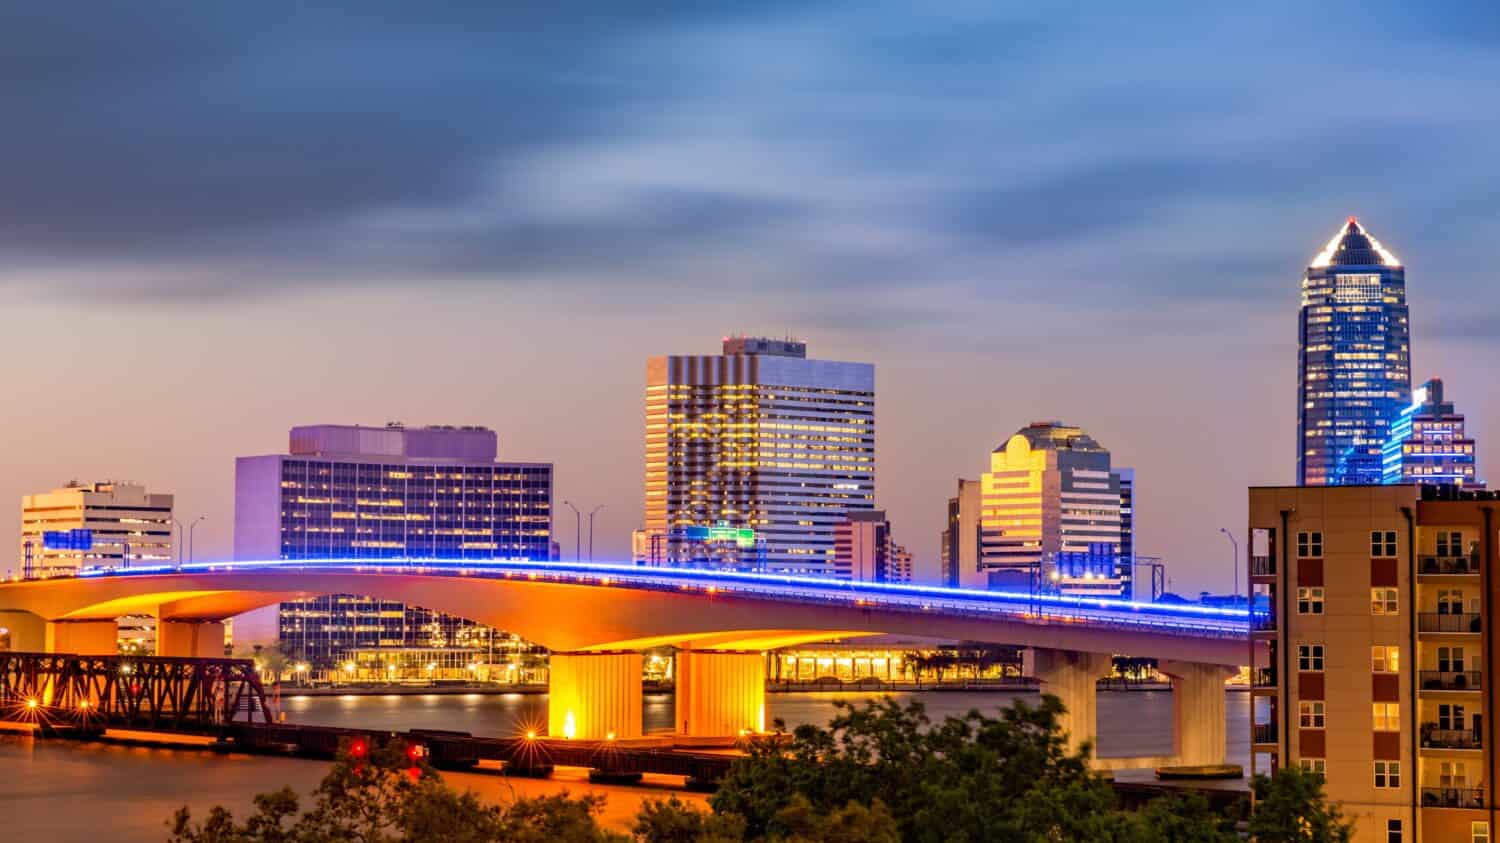 Lunga esposizione dello skyline di Jacksonville, Florida e del ponte Acosta che attraversa il fiume St. Johns, al crepuscolo.  Jacksonville è una città situata sulla costa atlantica della Florida nord-orientale.